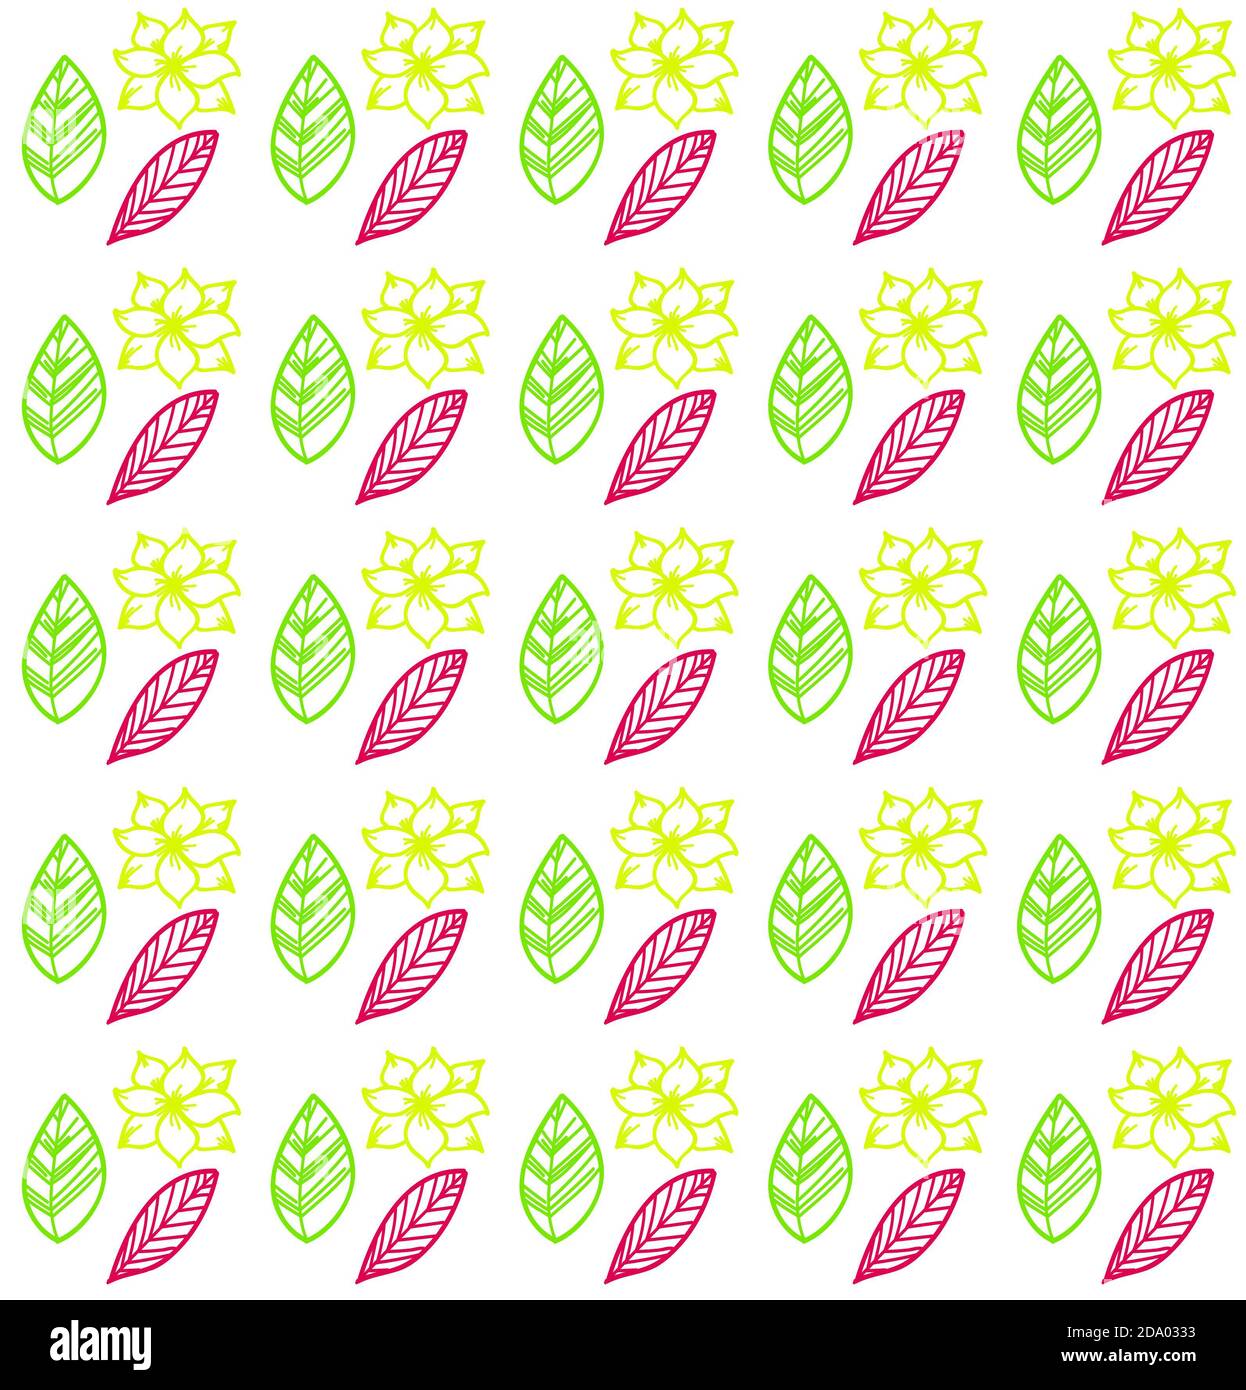 Einfaches Nahtmuster. Blumen und Blätter. Weißer Hintergrund. Design für Dekor, Drucke, Textil, Möbel, Stoff, digital. Stockfoto